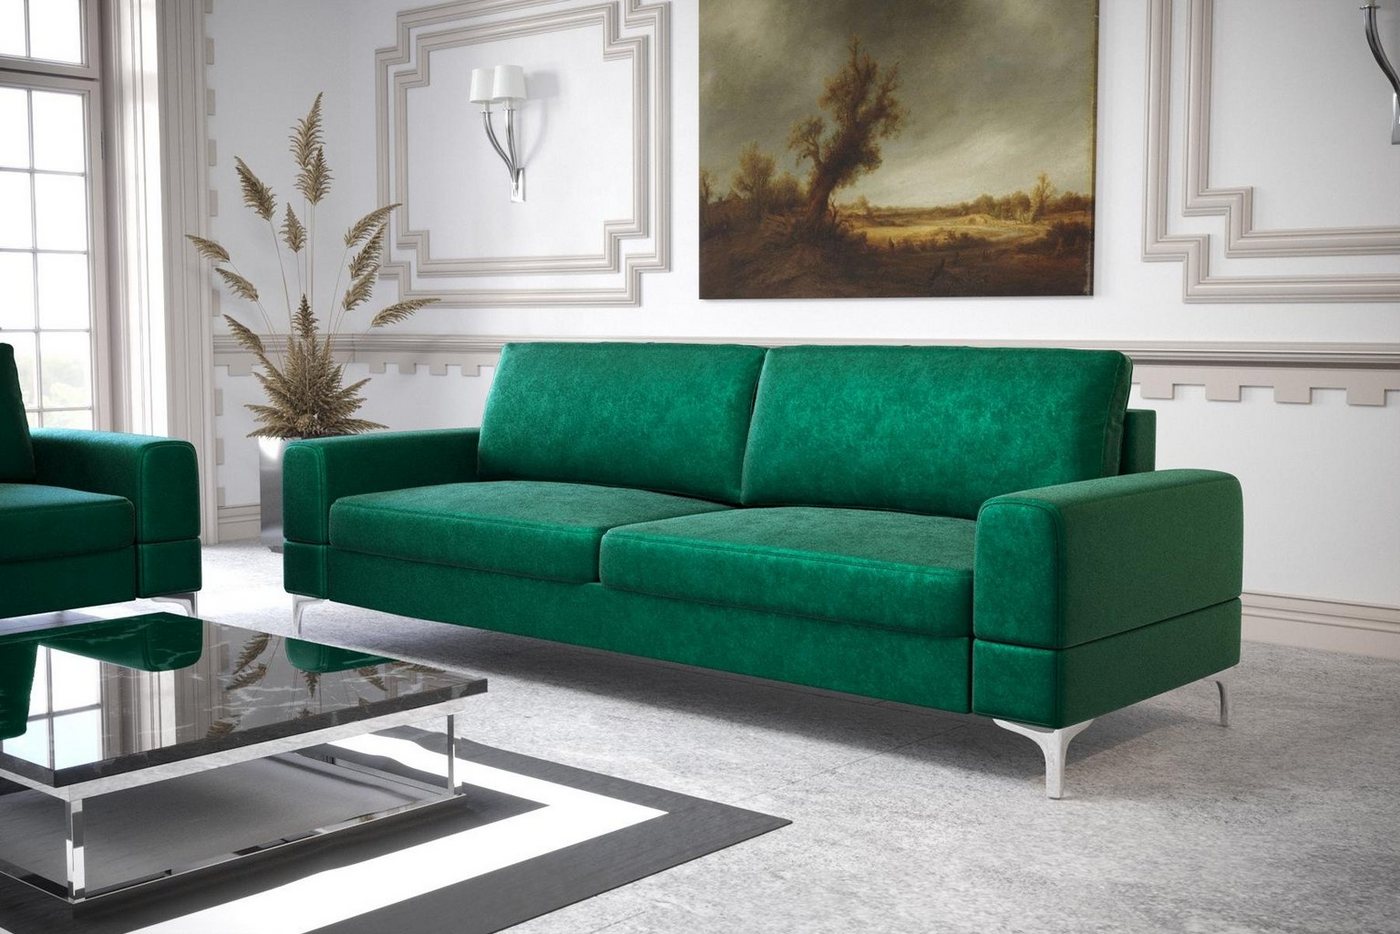 JVmoebel Sofa Modernes Weißes Sofa Dreisitzer Luxus Couch Kunstleder Möbel Holz, Made in Europe von JVmoebel